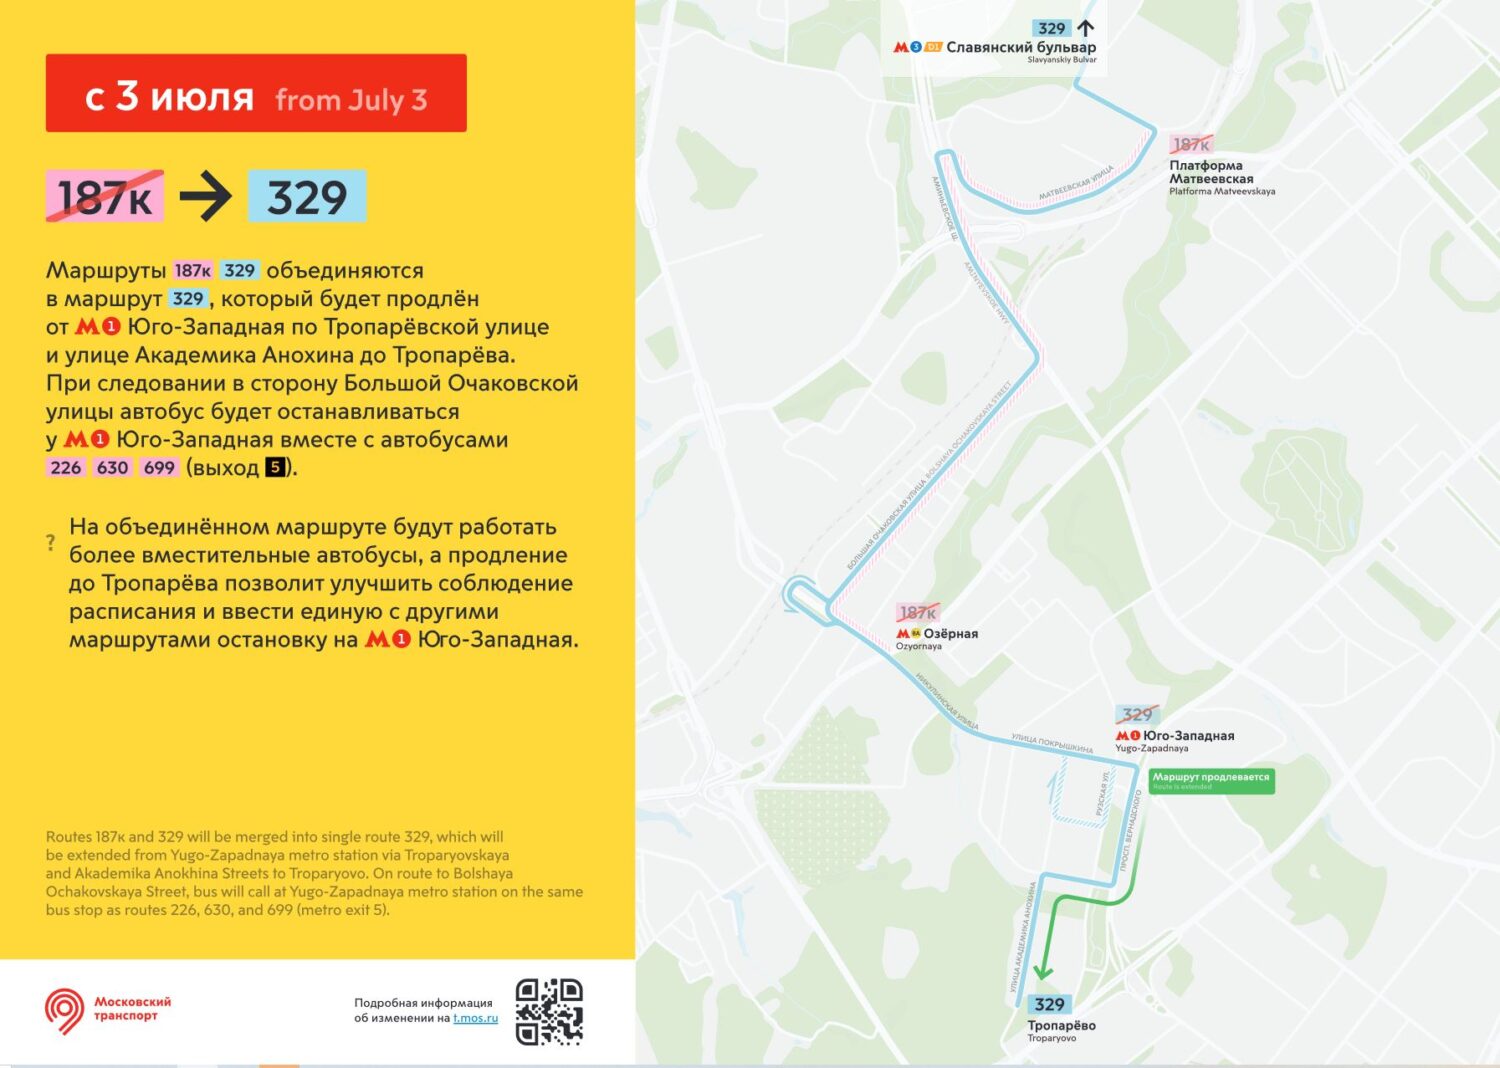 Шесть автобусных маршрутов Москвы изменятся с 30 июня - 3 июля